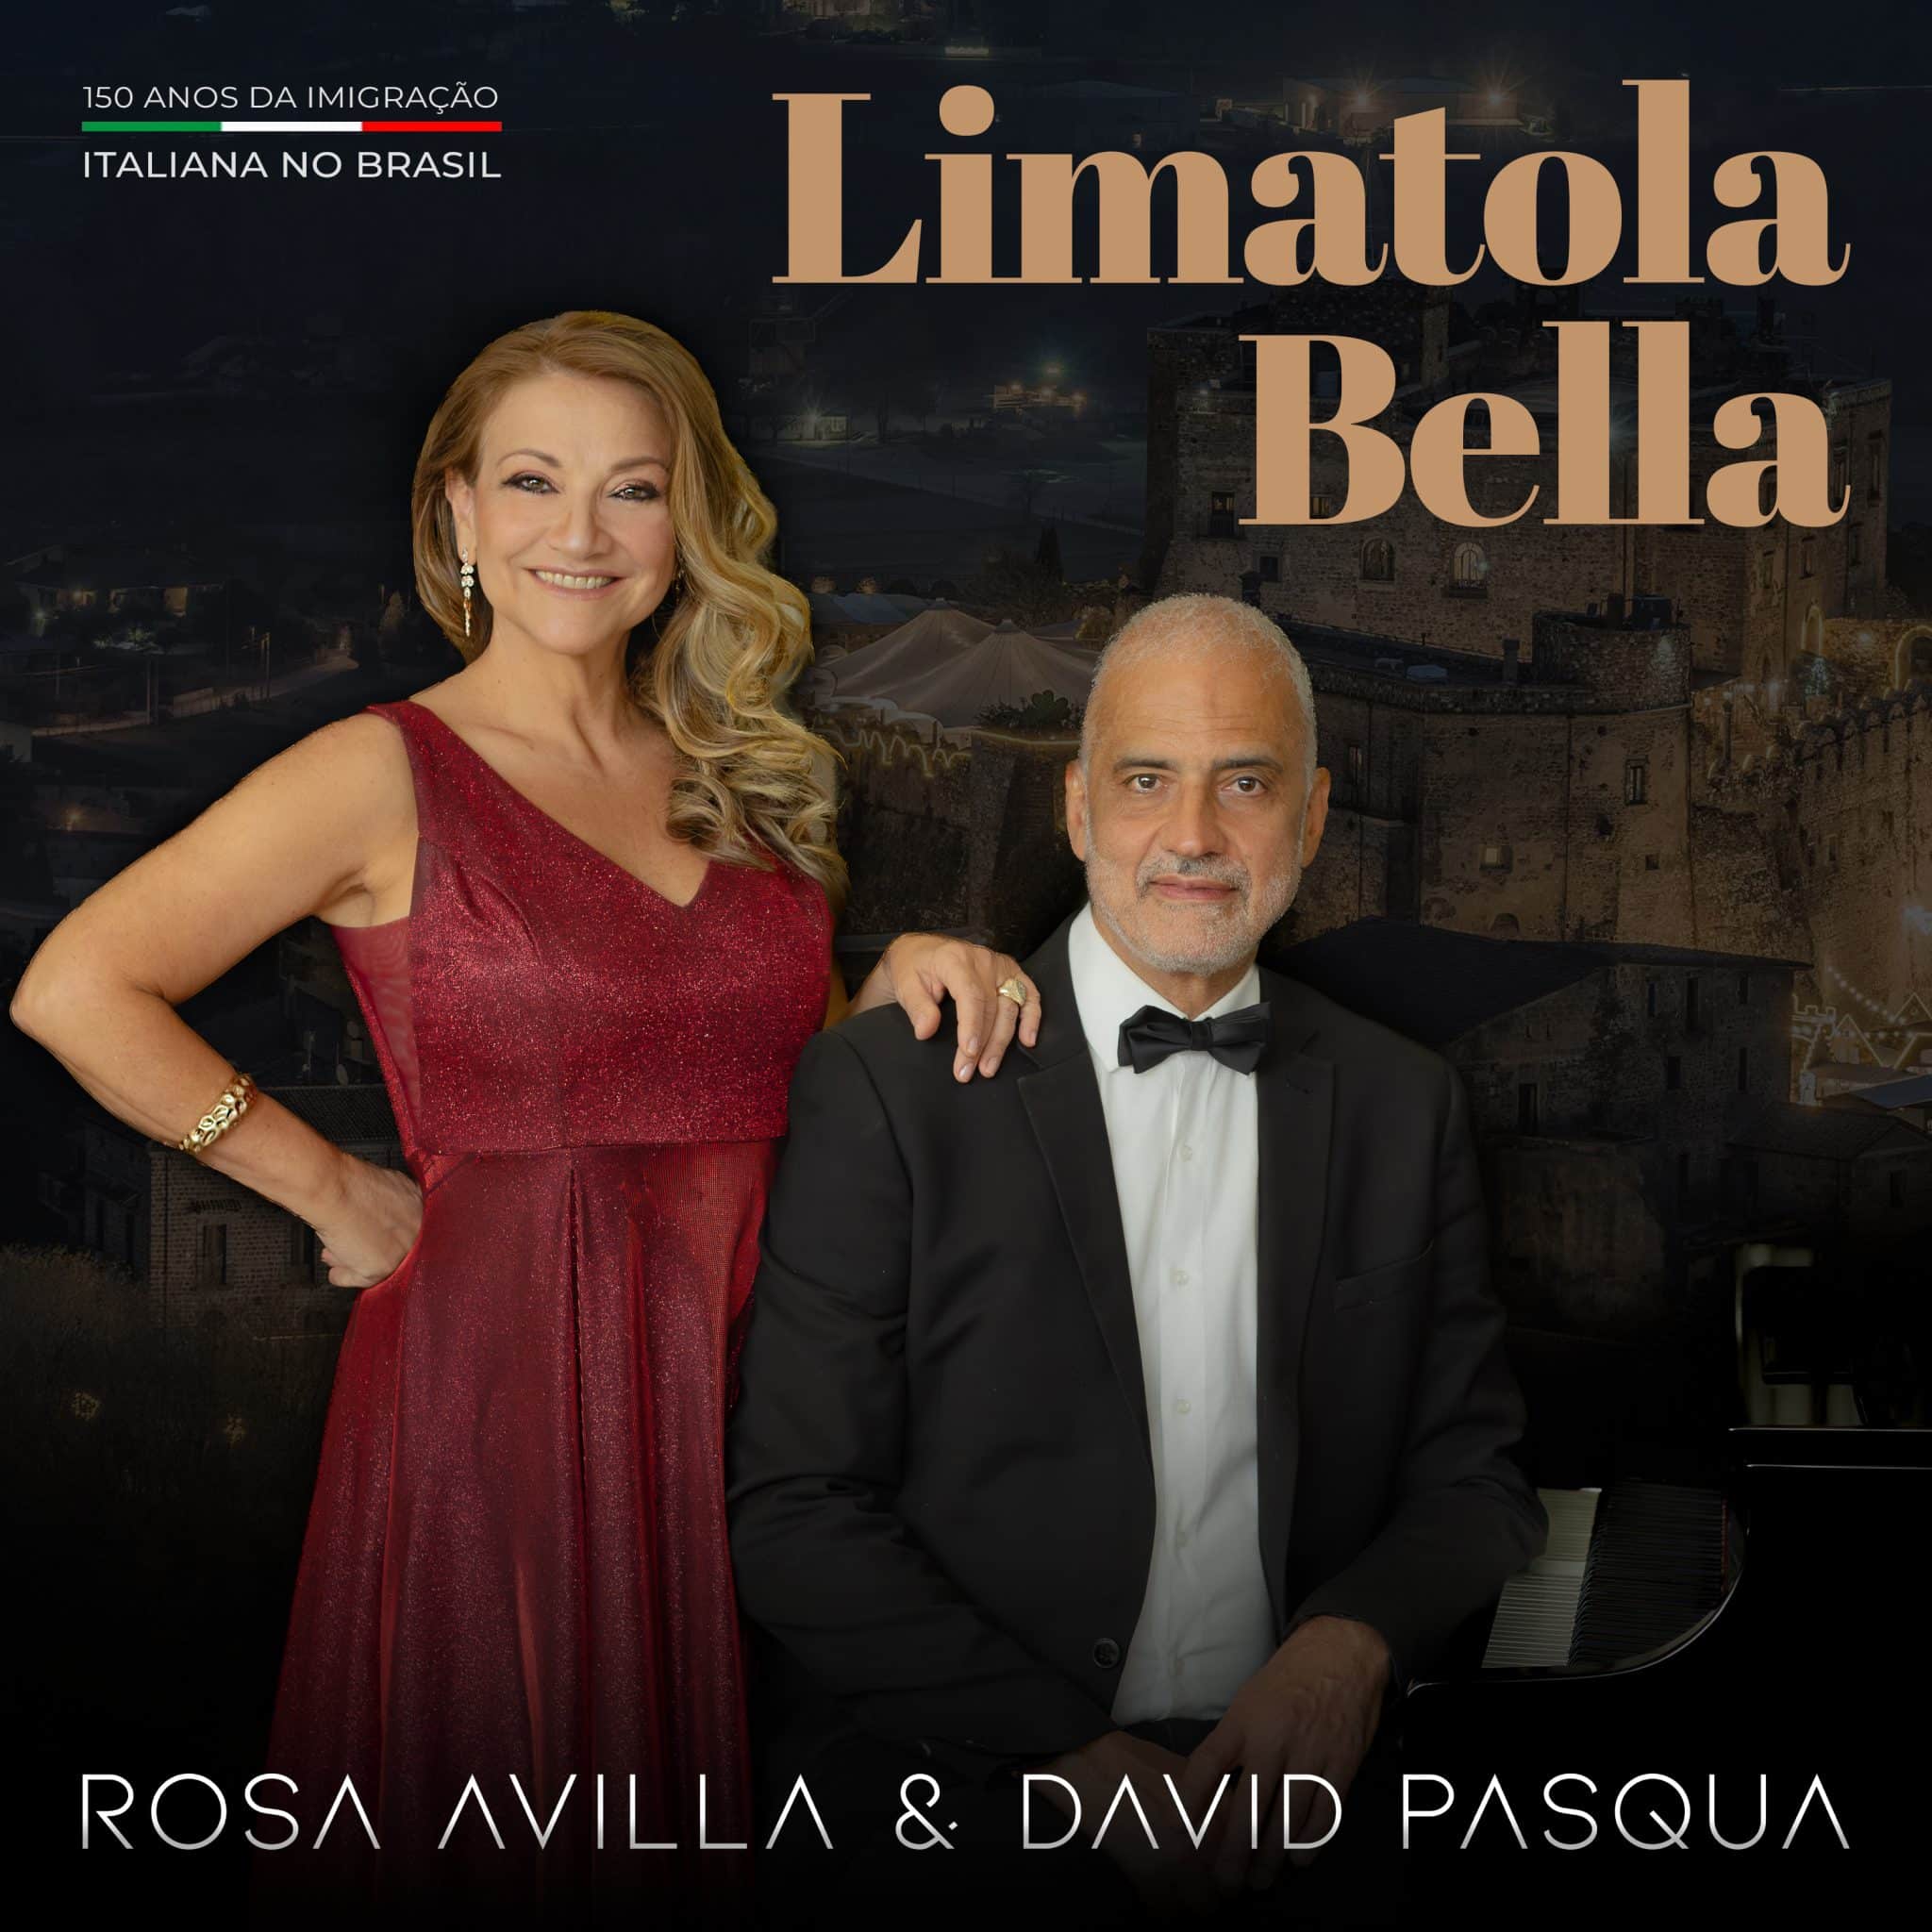 revistaprosaversoearte.com - Rosa Avilla lança single 'Limatola bella', em comemoração aos 150 anos de imigração italiana no Brasil